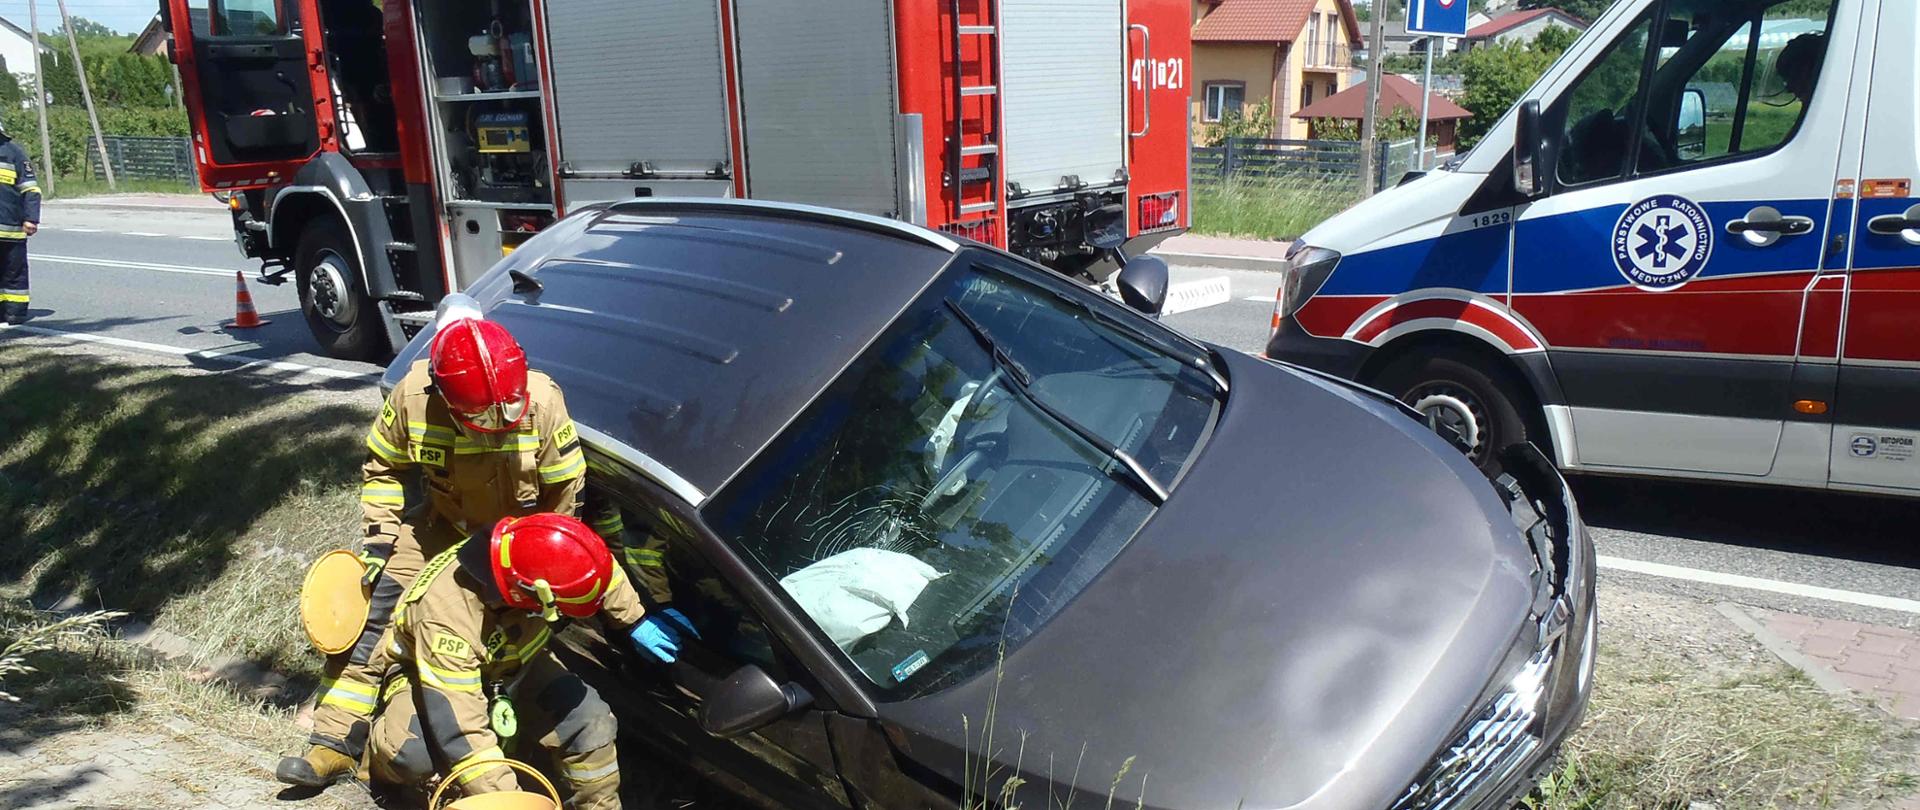 Zdjęcie zrobione na tle pojazdów ratowniczych. Na zdjęciu widać rozbity samochód przy którym stoi strażak. W oddali widać samochód strażacki. Na drodze ustawiony stożek ostrzegawczy.